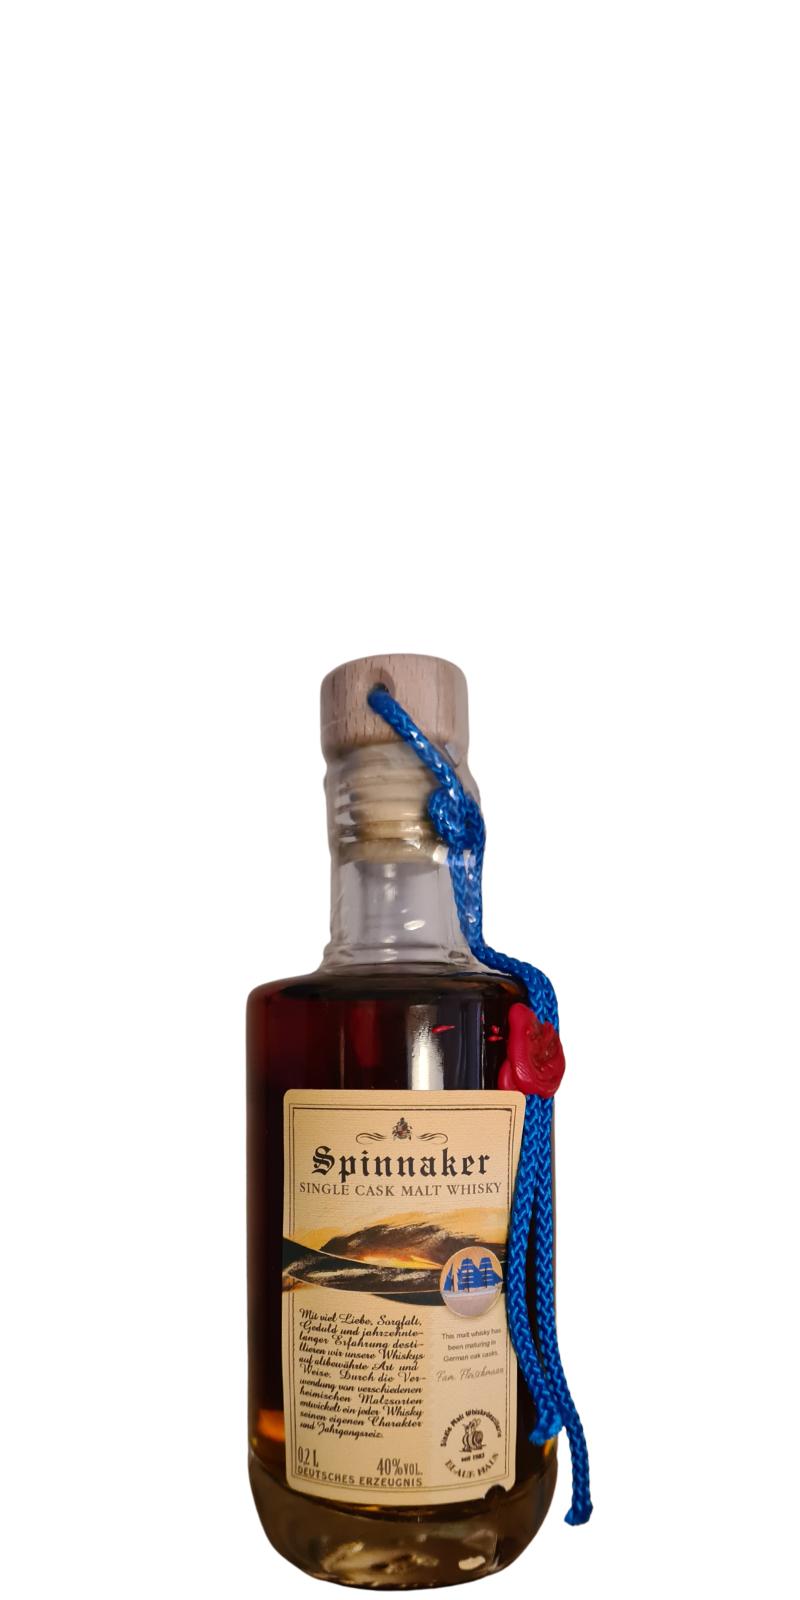 Spinnaker 2009 Single Cask Malt Whisky 40% 200ml